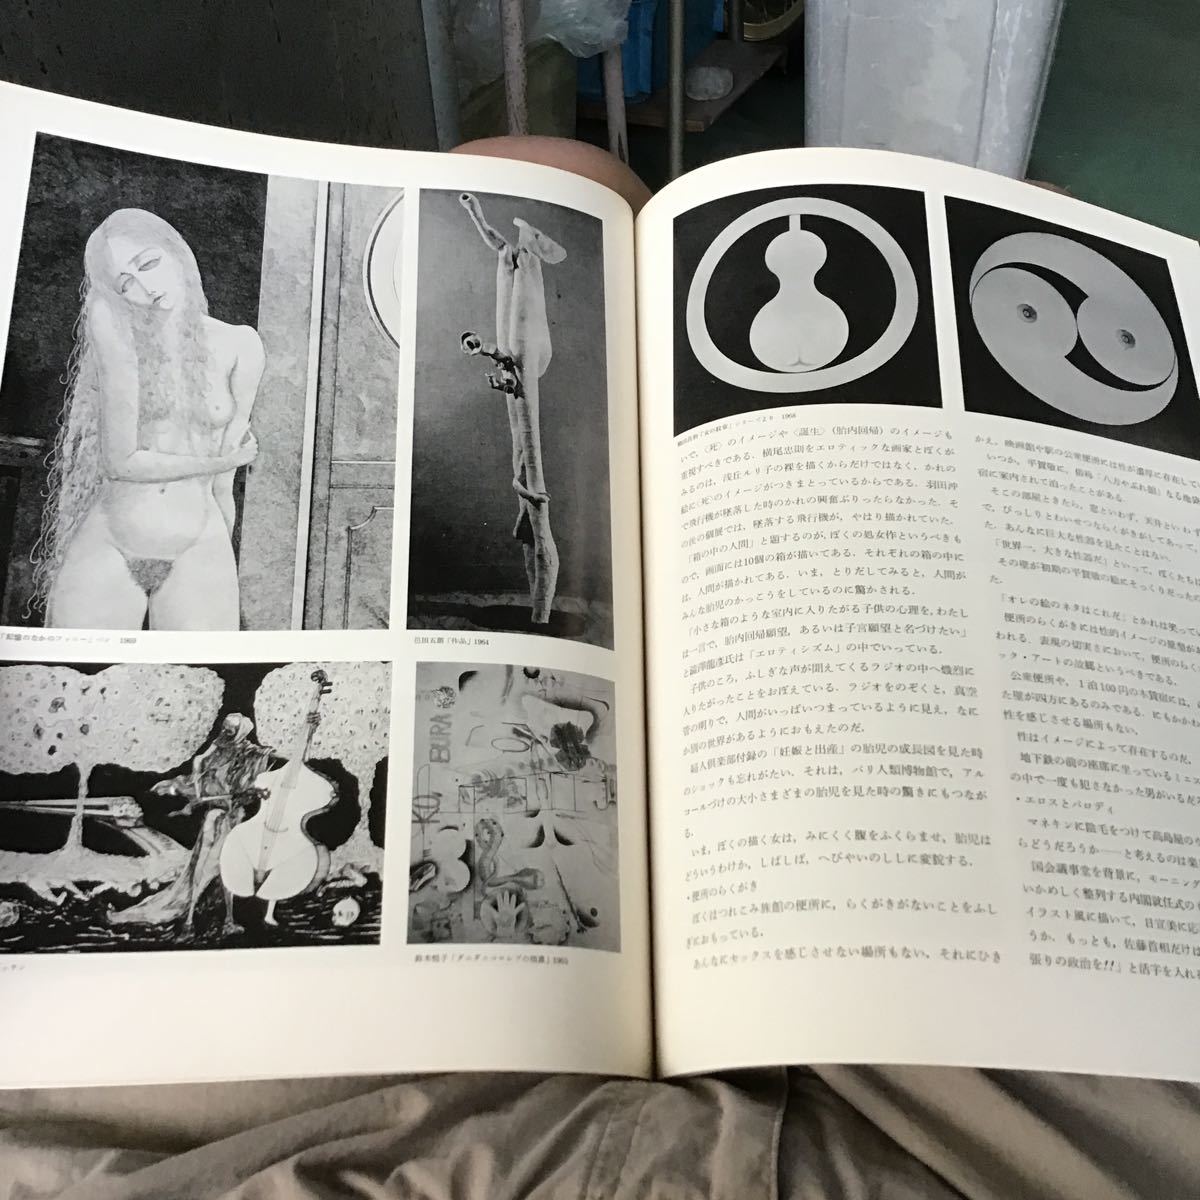 1969,6みずゑ　今日の人間像 No.773 特集 今日の人間像 愛と諸認 25 図像化されたエロスとユーモア 32 イメージとしての性 37 語る絵画とユ_画像7